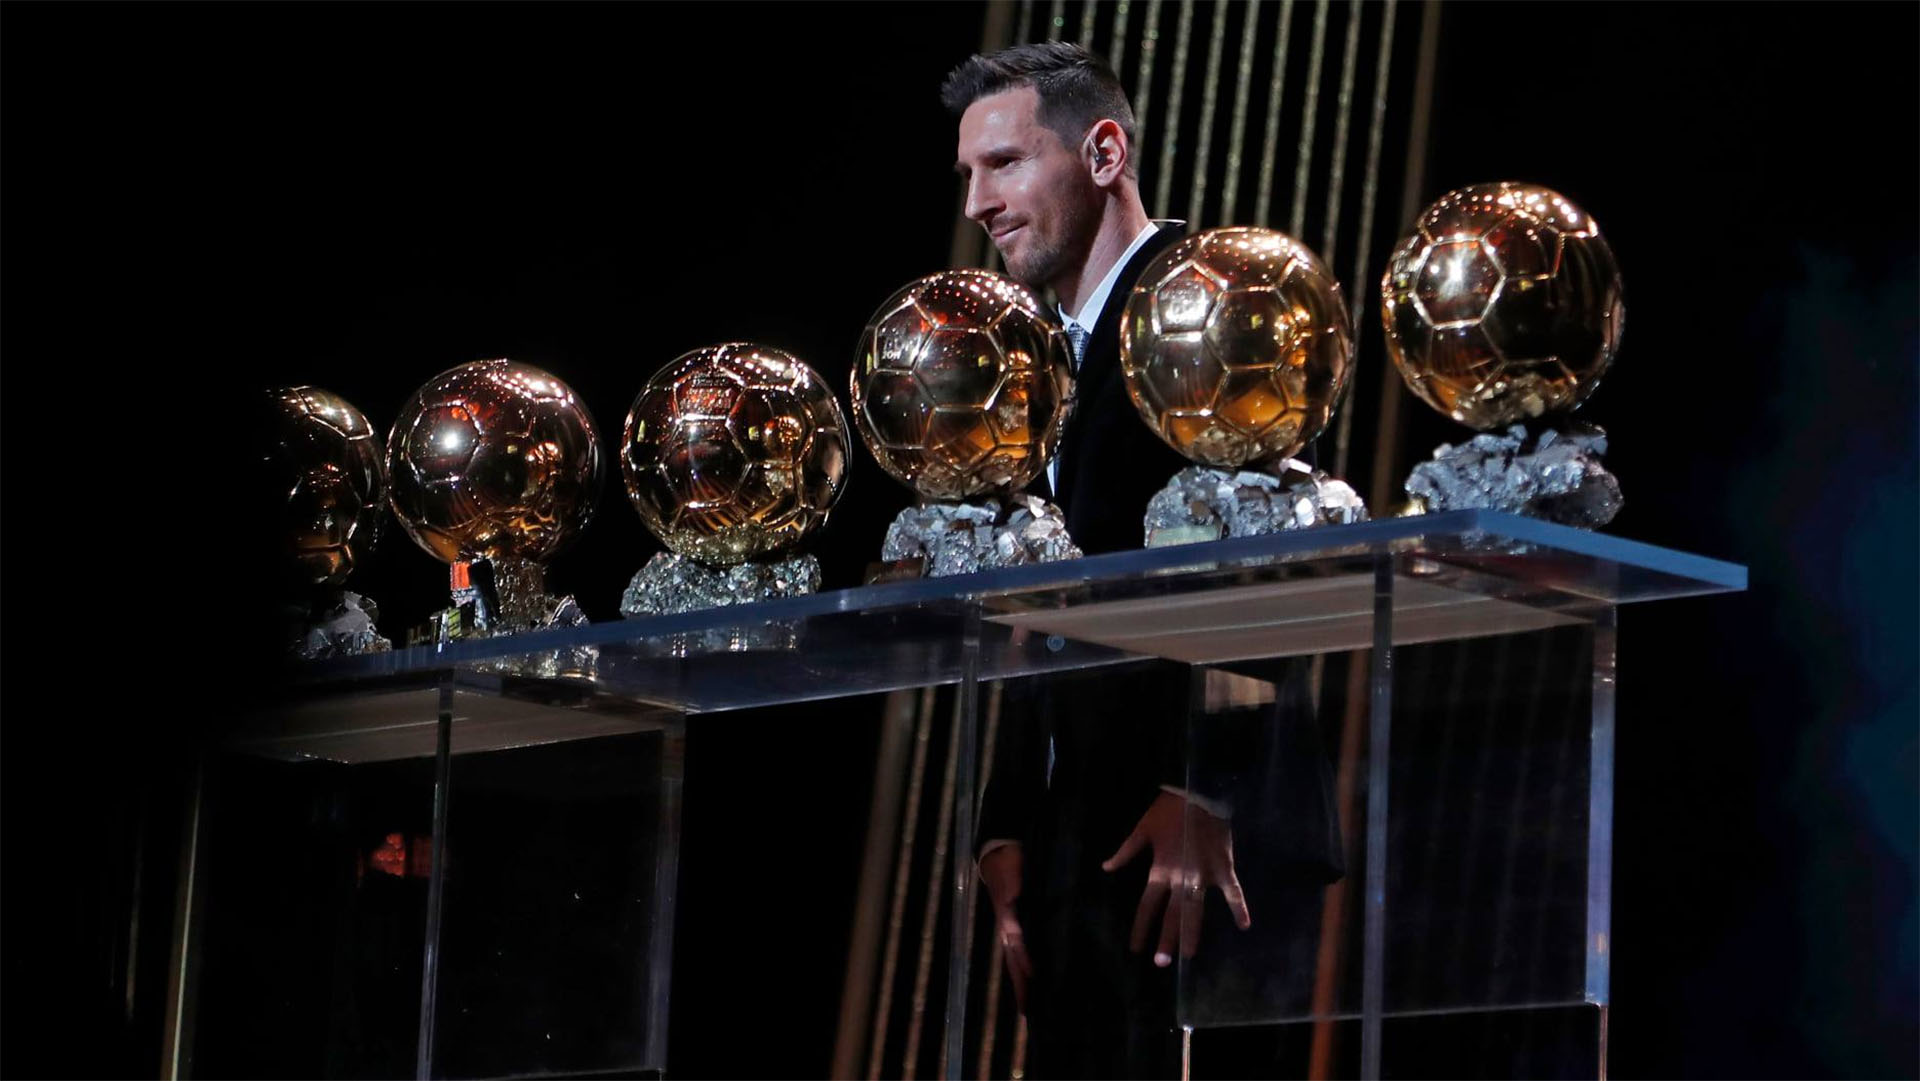 Lionel Messi combina su octavo Balón de Oro con un reloj de oro